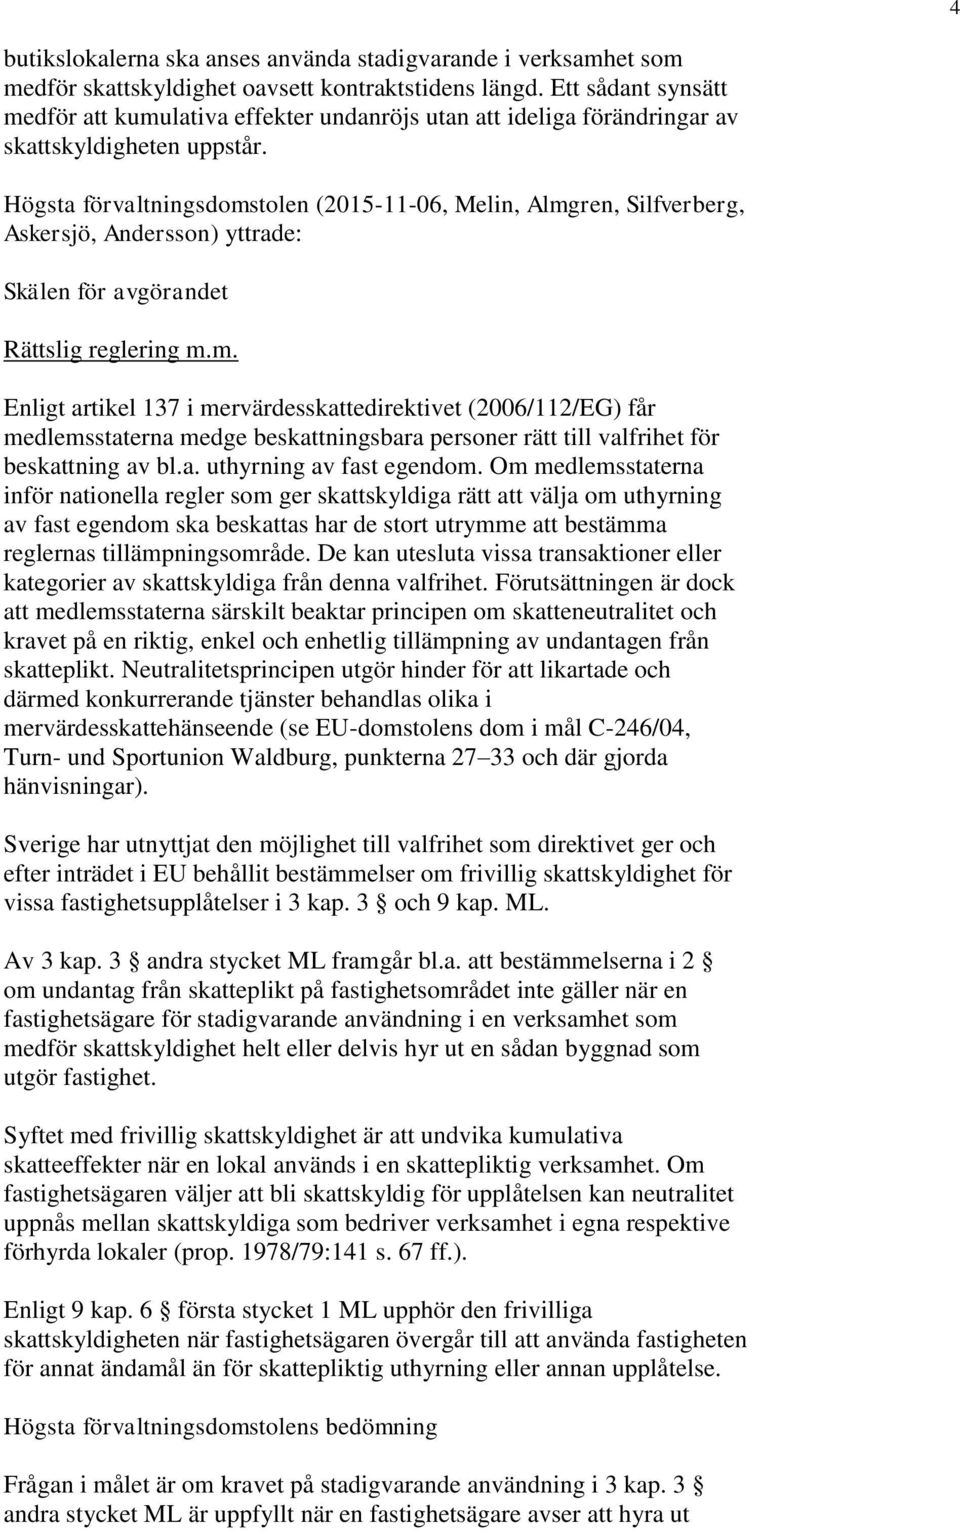 Högsta förvaltningsdomstolen (2015-11-06, Melin, Almgren, Silfverberg, Askersjö, Andersson) yttrade: Skälen för avgörandet Rättslig reglering m.m. Enligt artikel 137 i mervärdesskattedirektivet (2006/112/EG) får medlemsstaterna medge beskattningsbara personer rätt till valfrihet för beskattning av bl.